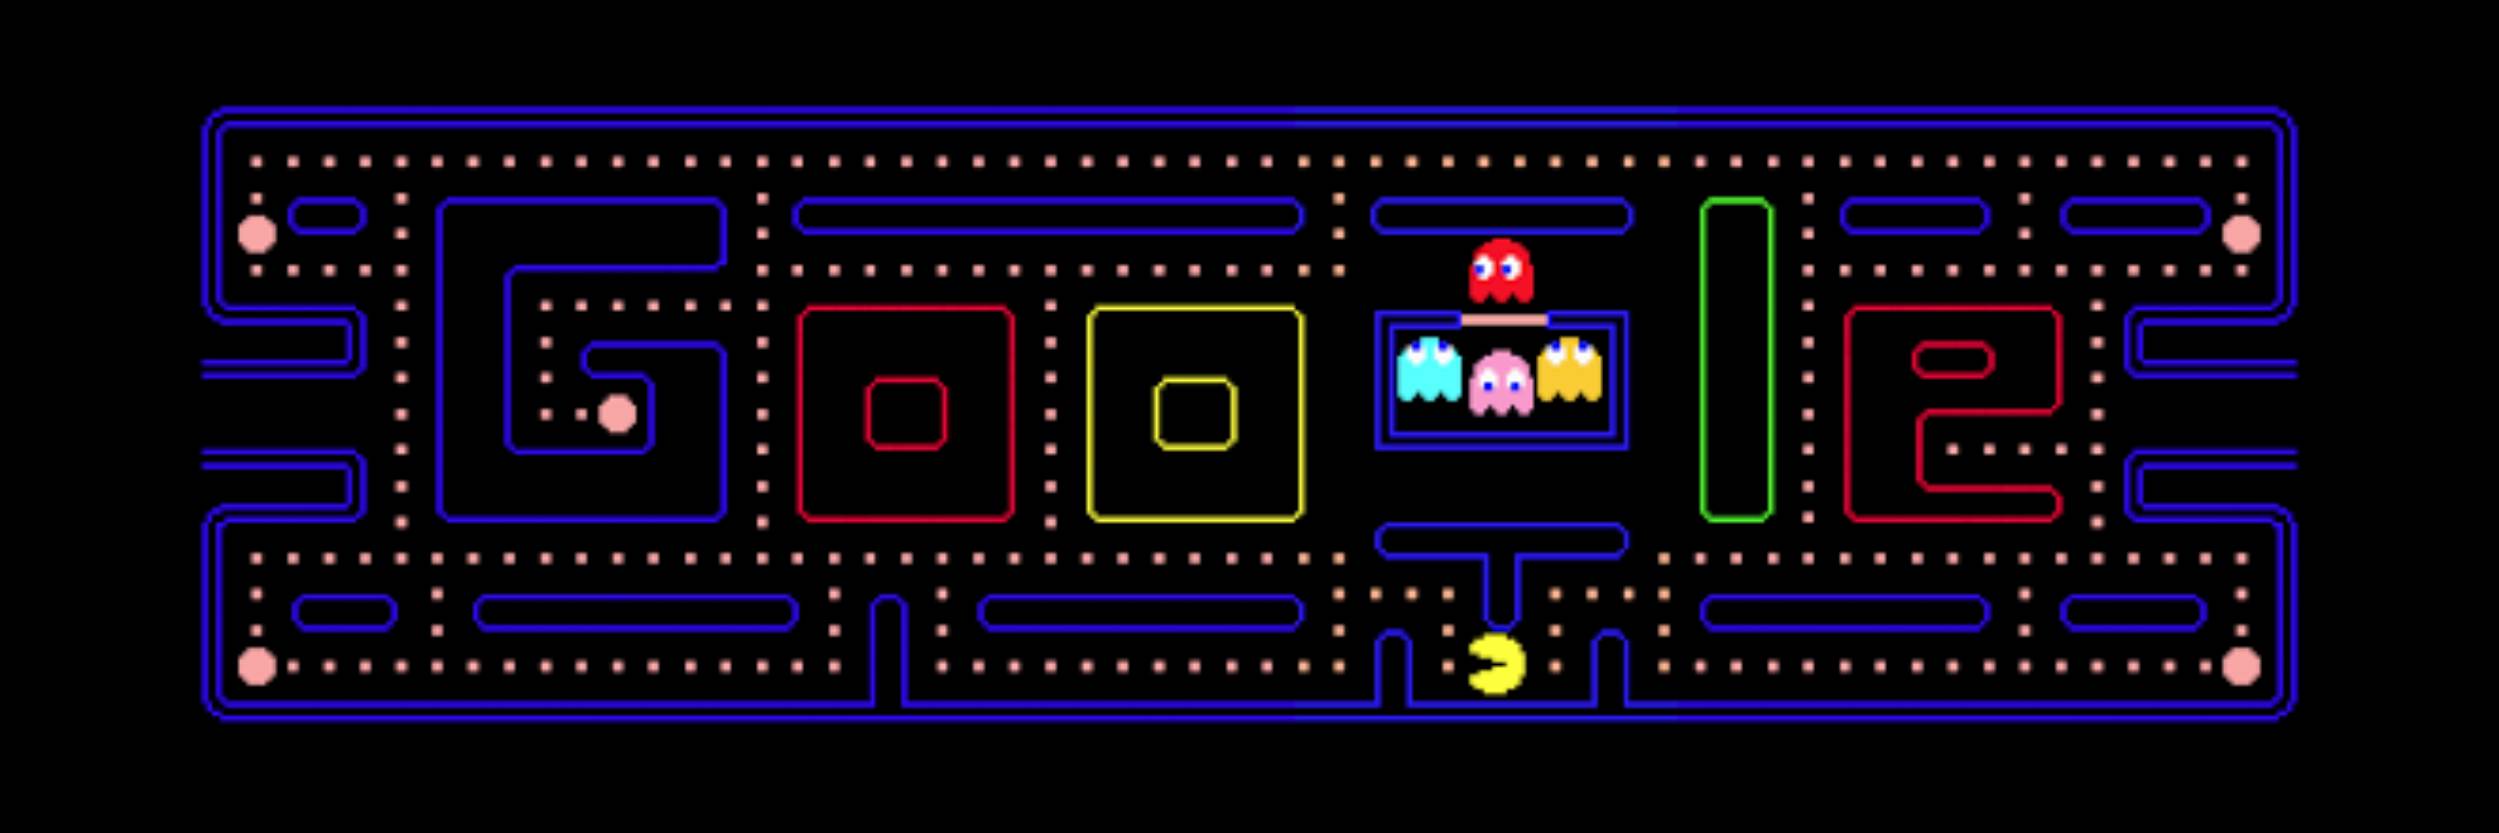 30 datos curiosos sobre Pac-Man y su creador Toru Iwatani